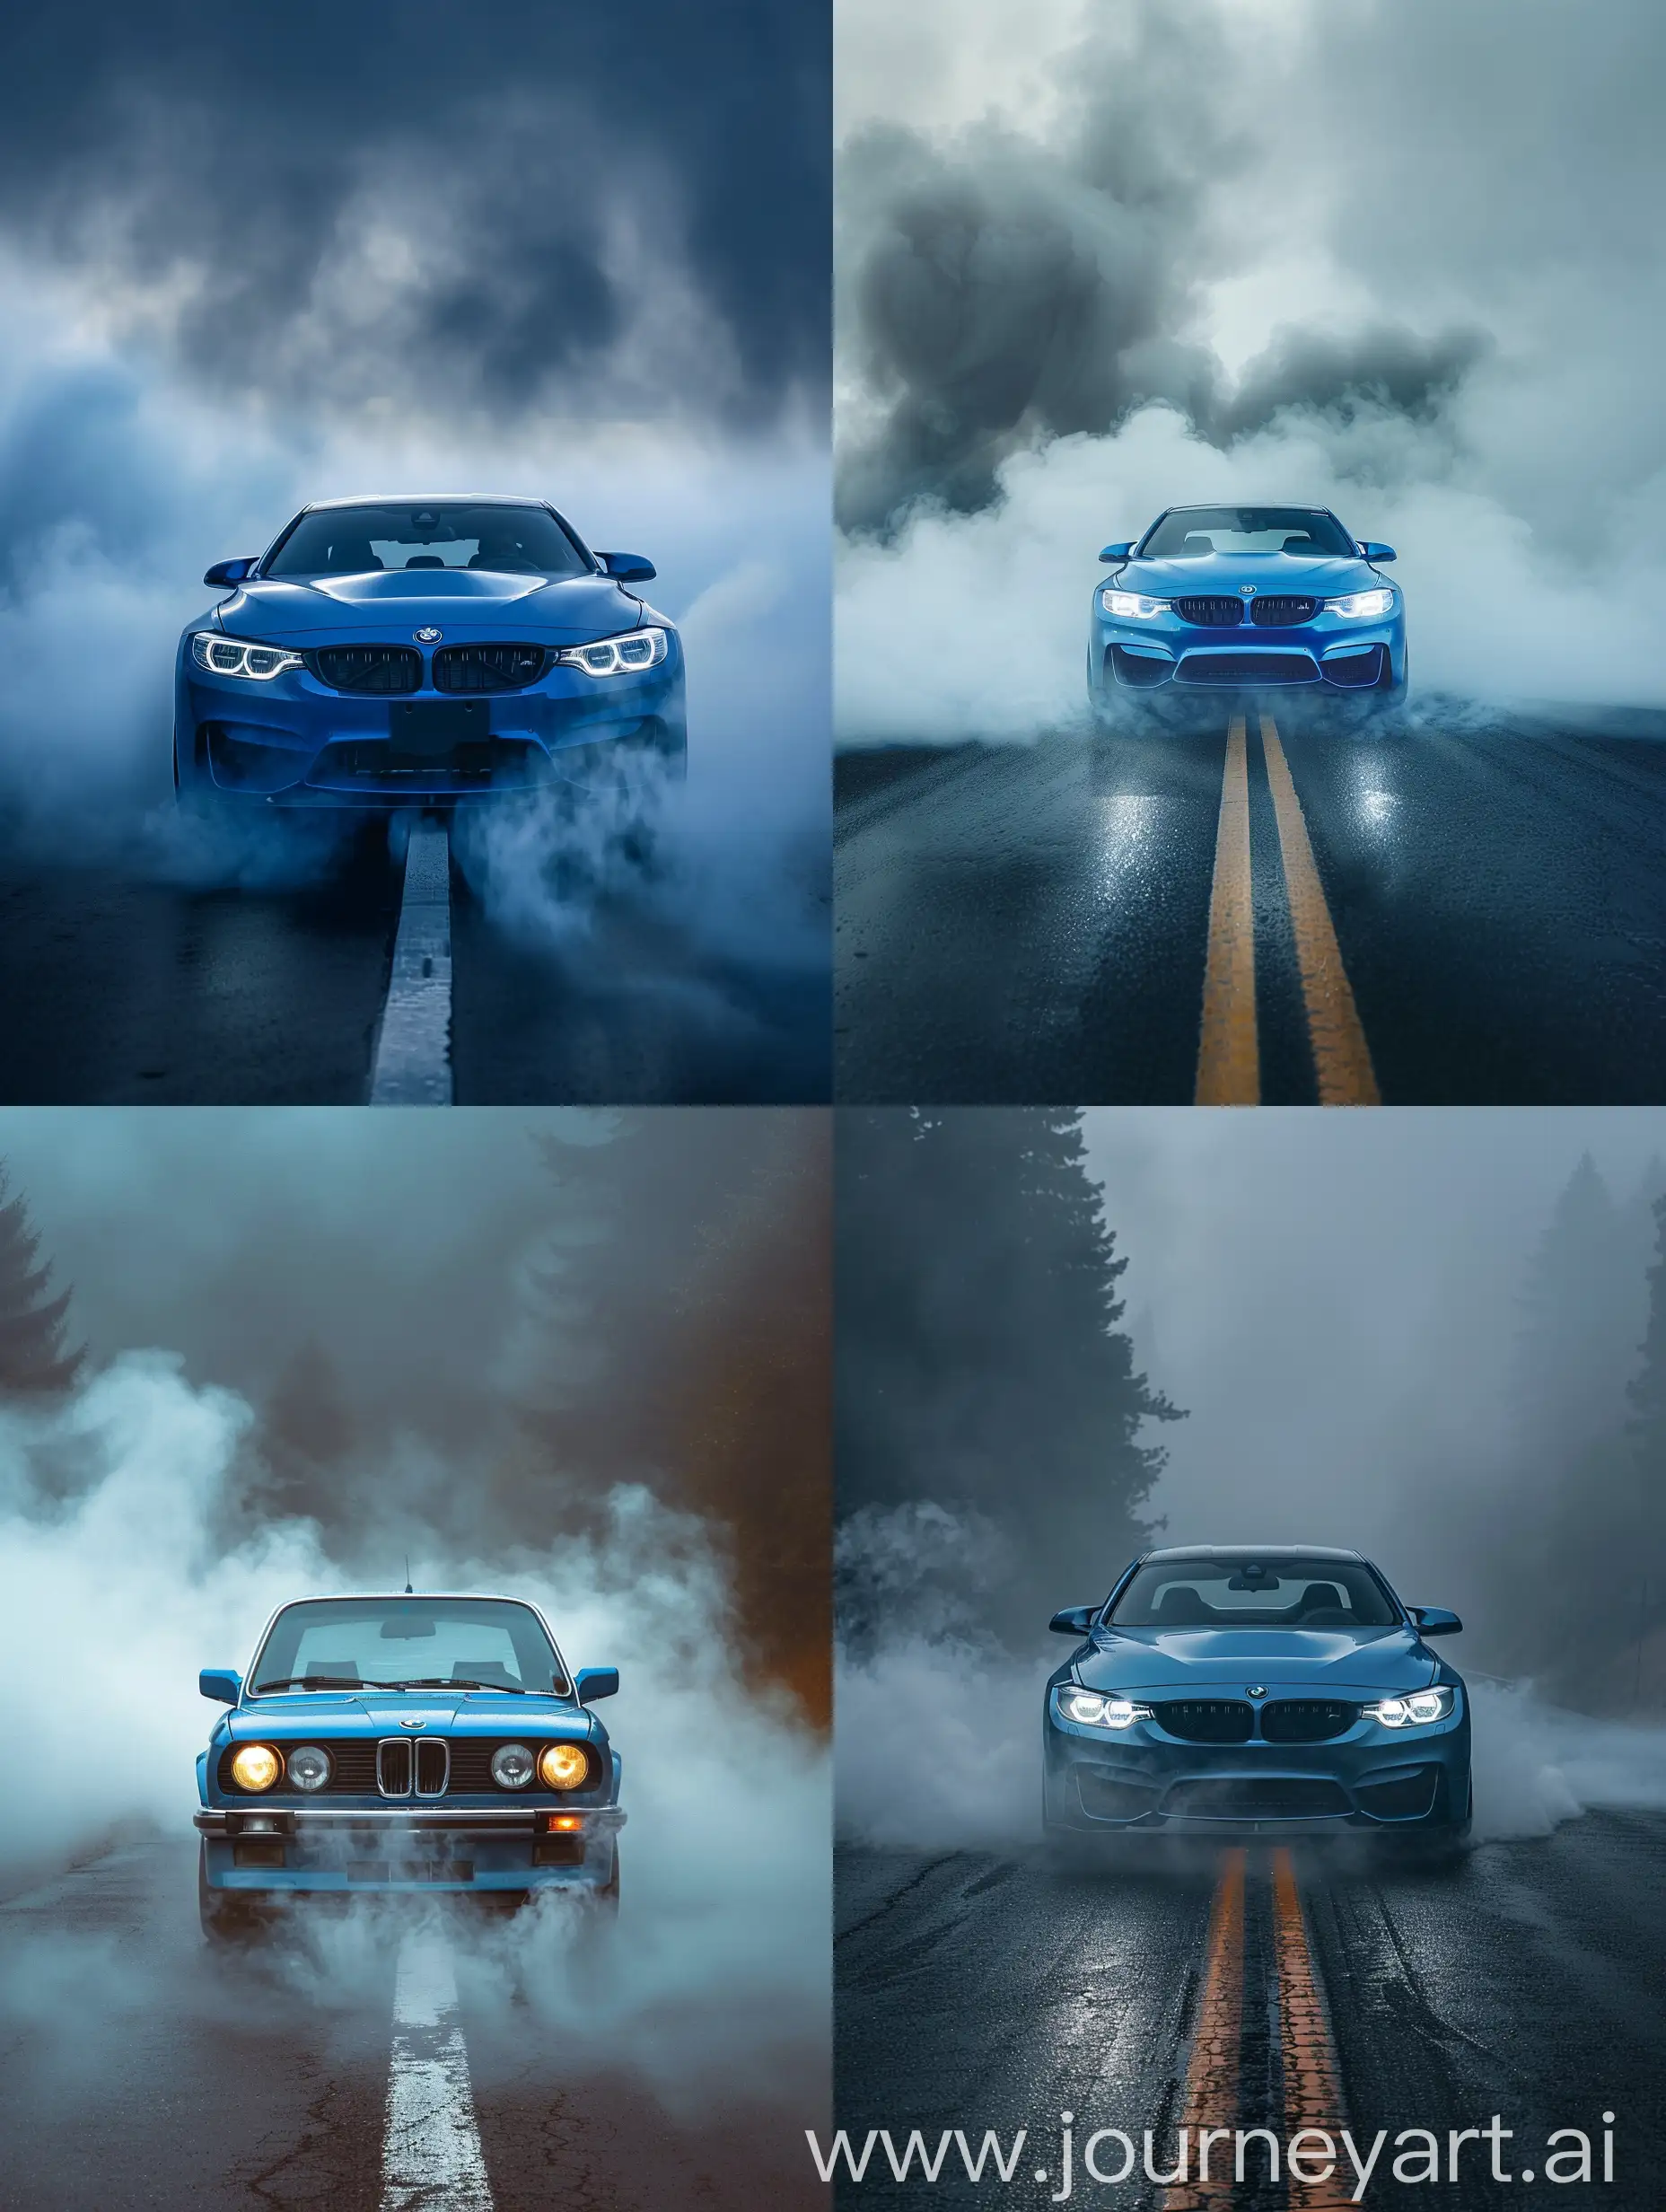 На изображении показан синий автомобиль BMW, стоящий на дороге, окруженной дымом. На переднем плане автомобиля видны фары и решетка радиатора